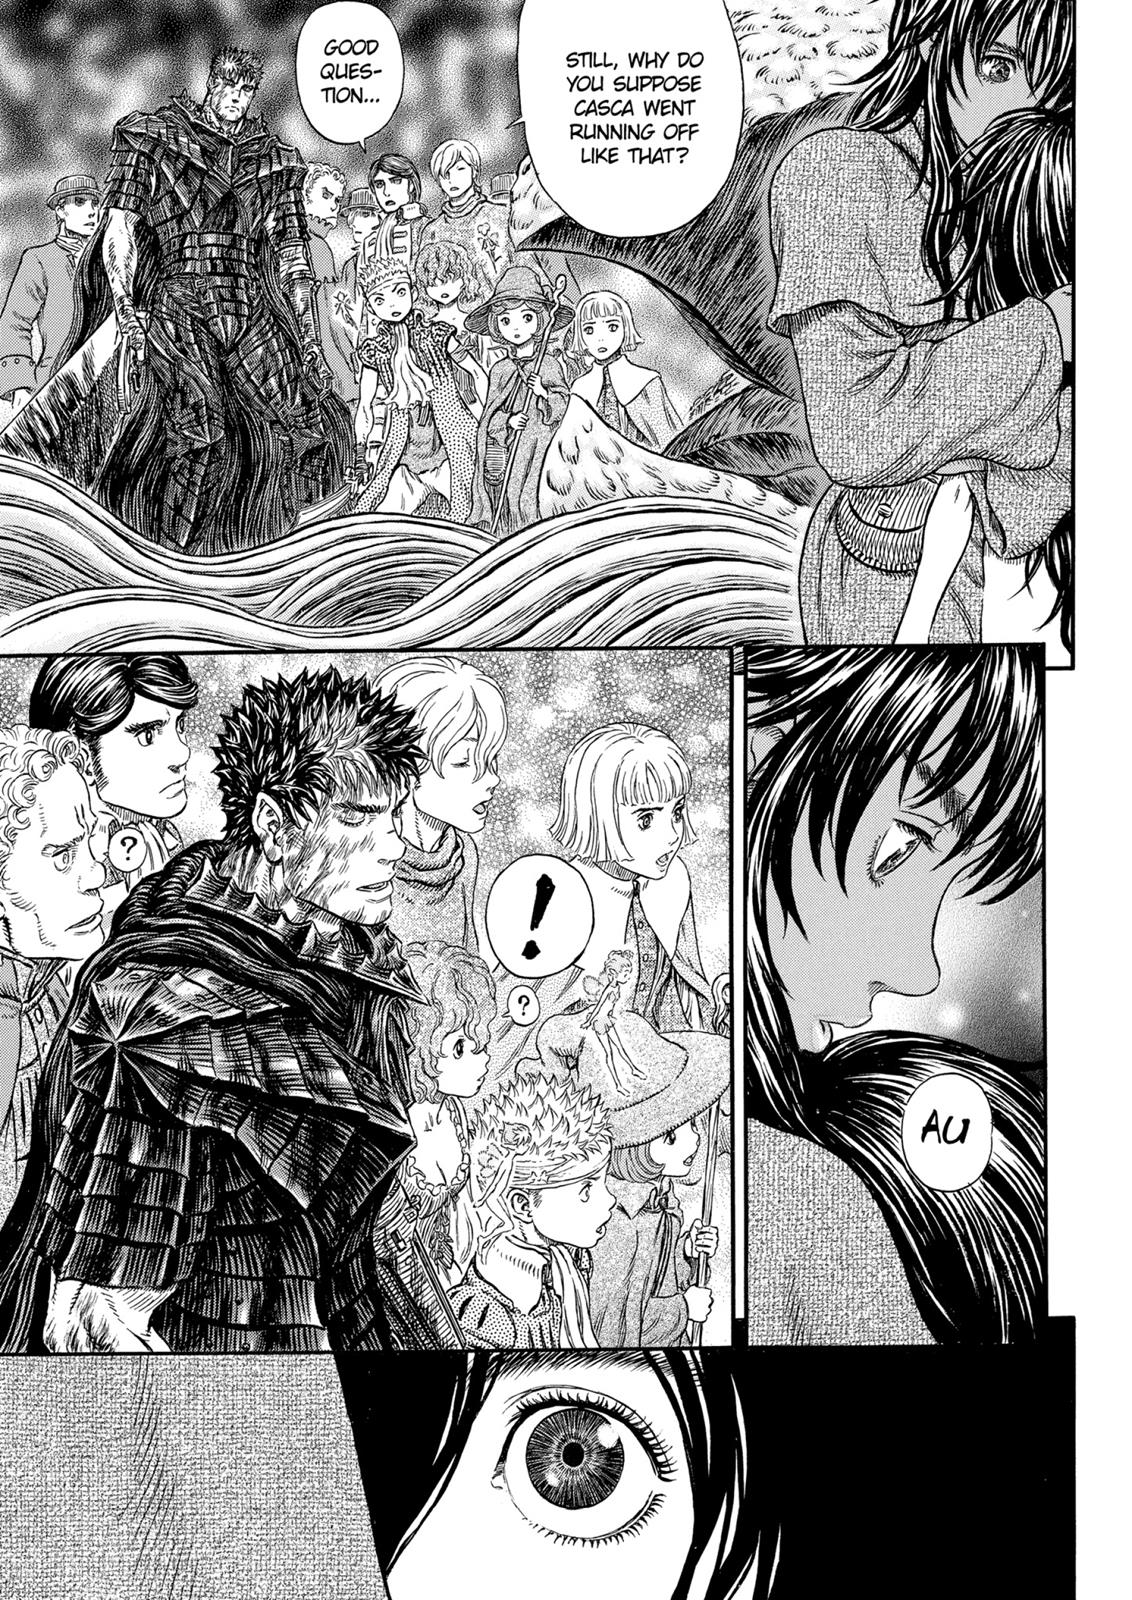 Berserk Manga Chapter 317 image 10